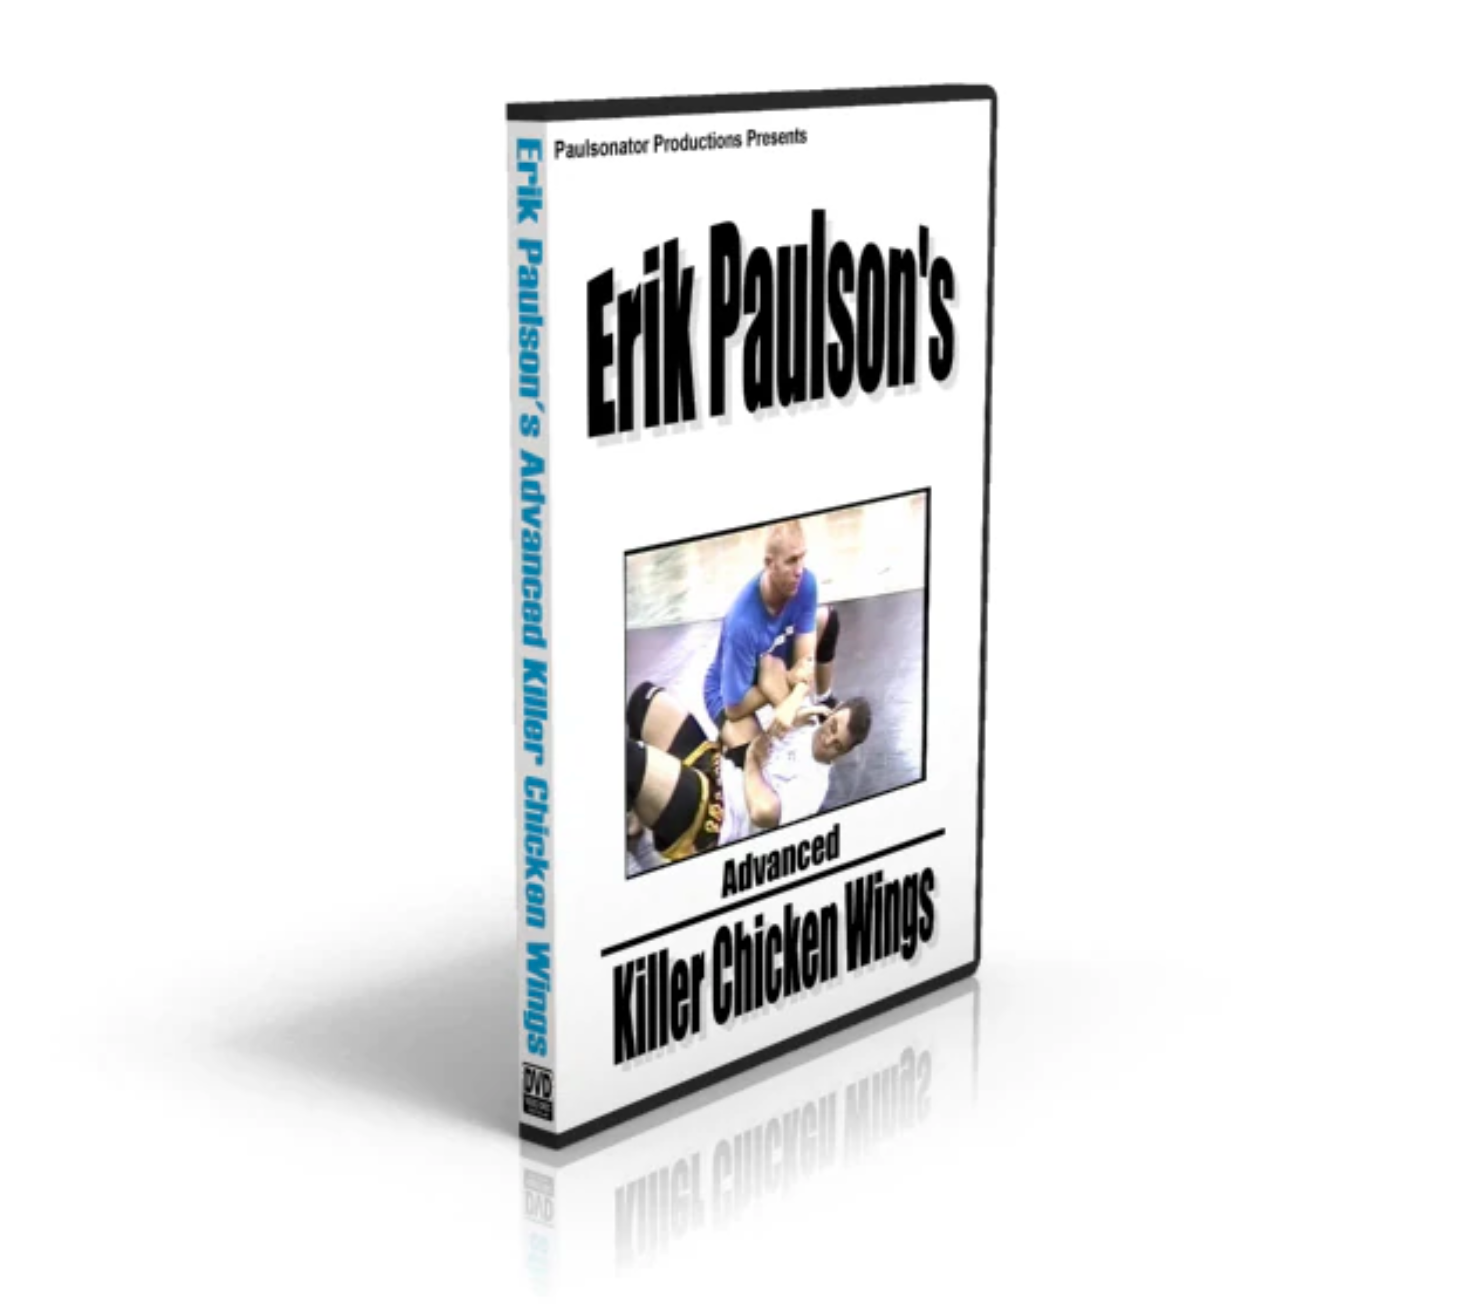 DVD de alitas de pollo Killer avanzadas de Erik Paulson